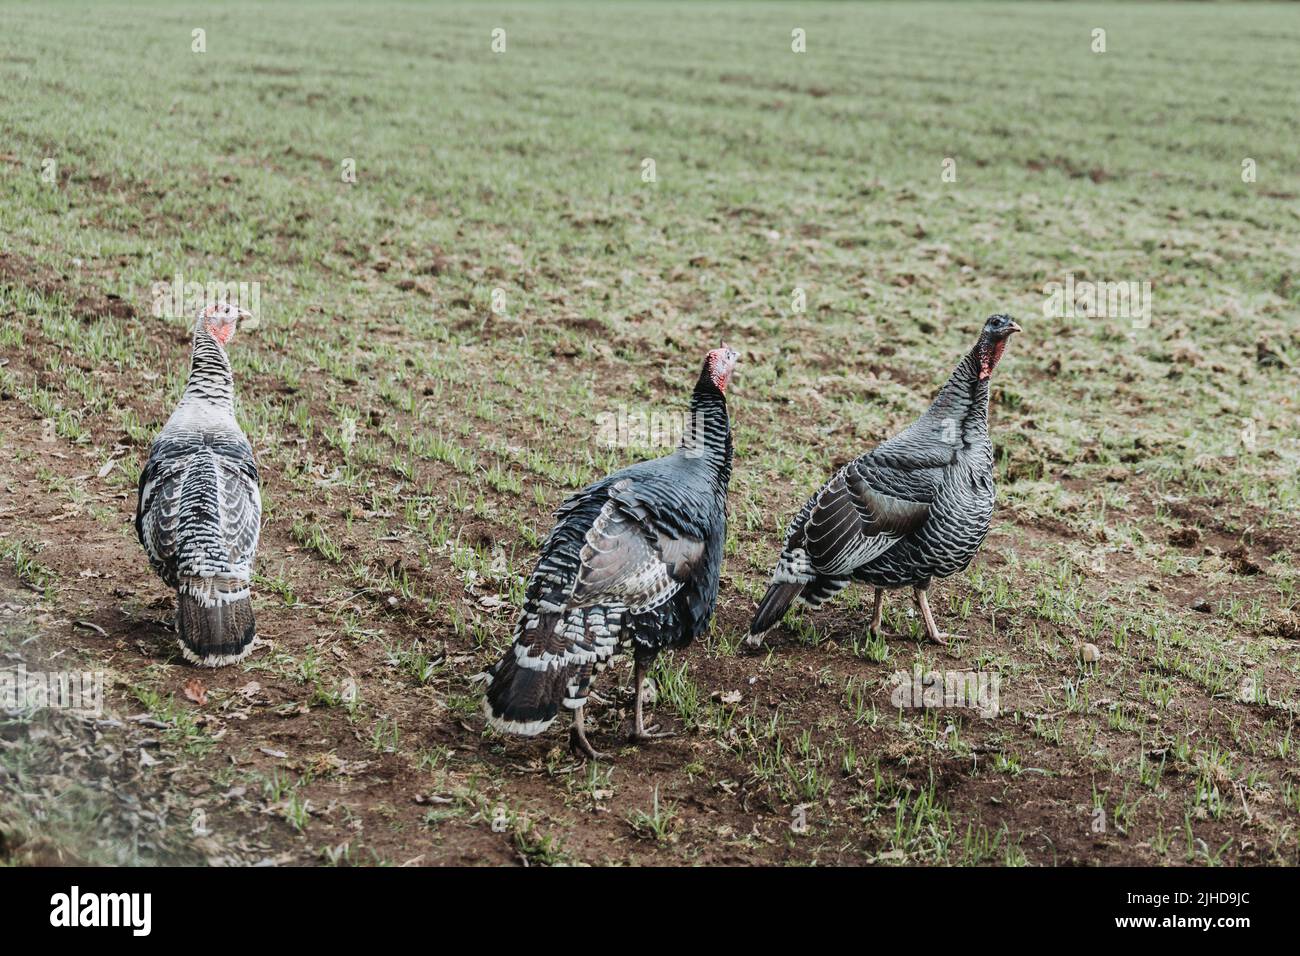 chilean female domestic turkeys walking in the field Stock Photo